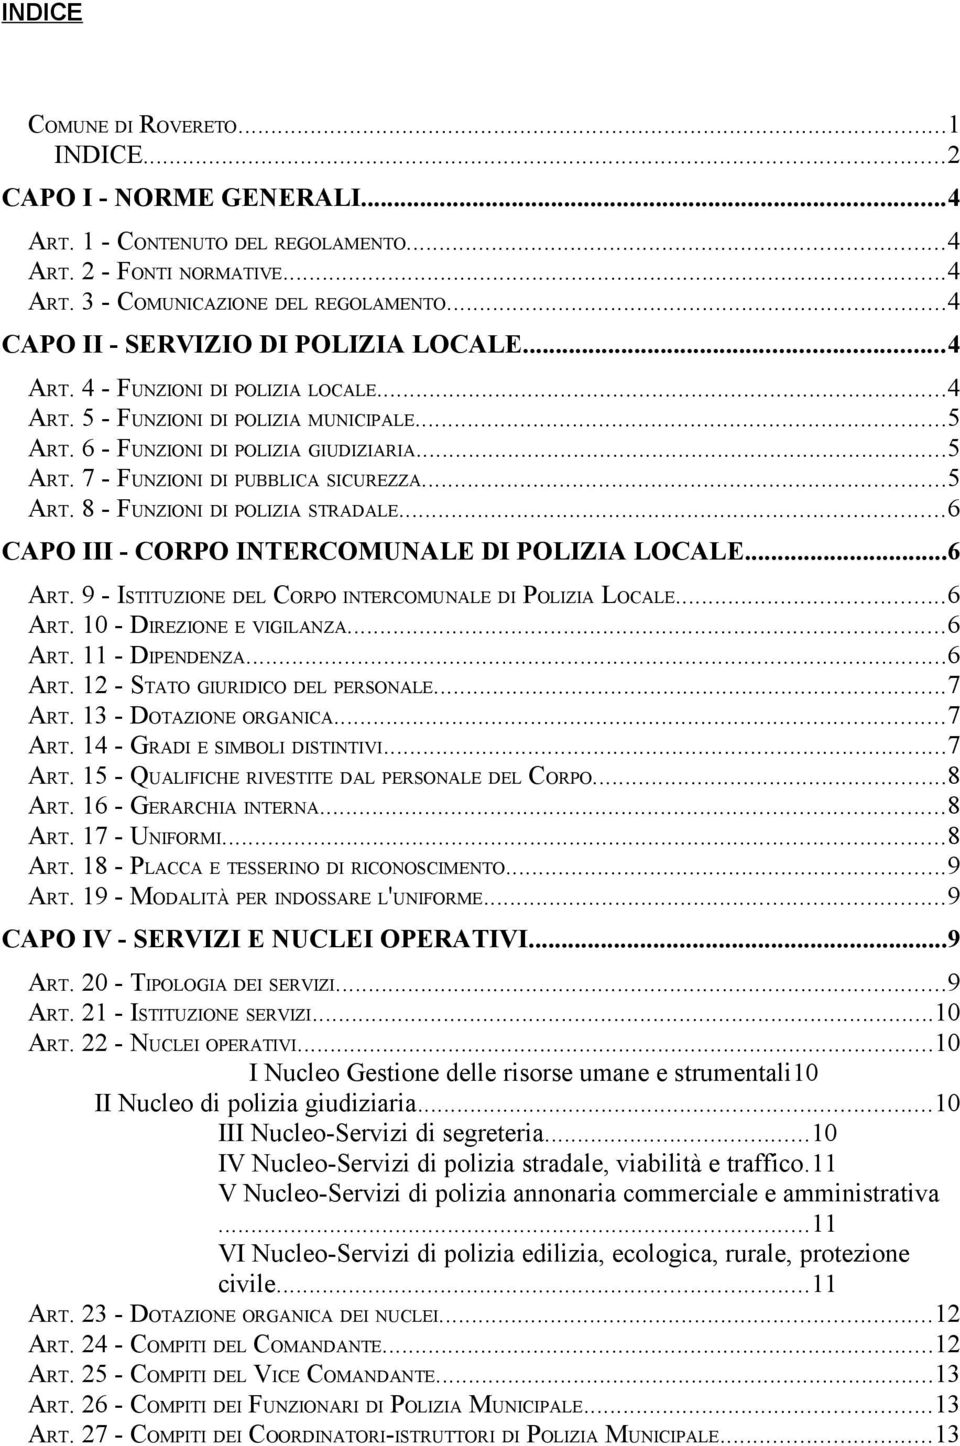 ..5 ART. 8 - FUNZIONI DI POLIZIA STRADALE...6 CAPO III - CORPO INTERCOMUNALE DI POLIZIA LOCALE...6 ART. 9 - ISTITUZIONE DEL CORPO INTERCOMUNALE DI POLIZIA LOCALE...6 ART. 10 - DIREZIONE E VIGILANZA.